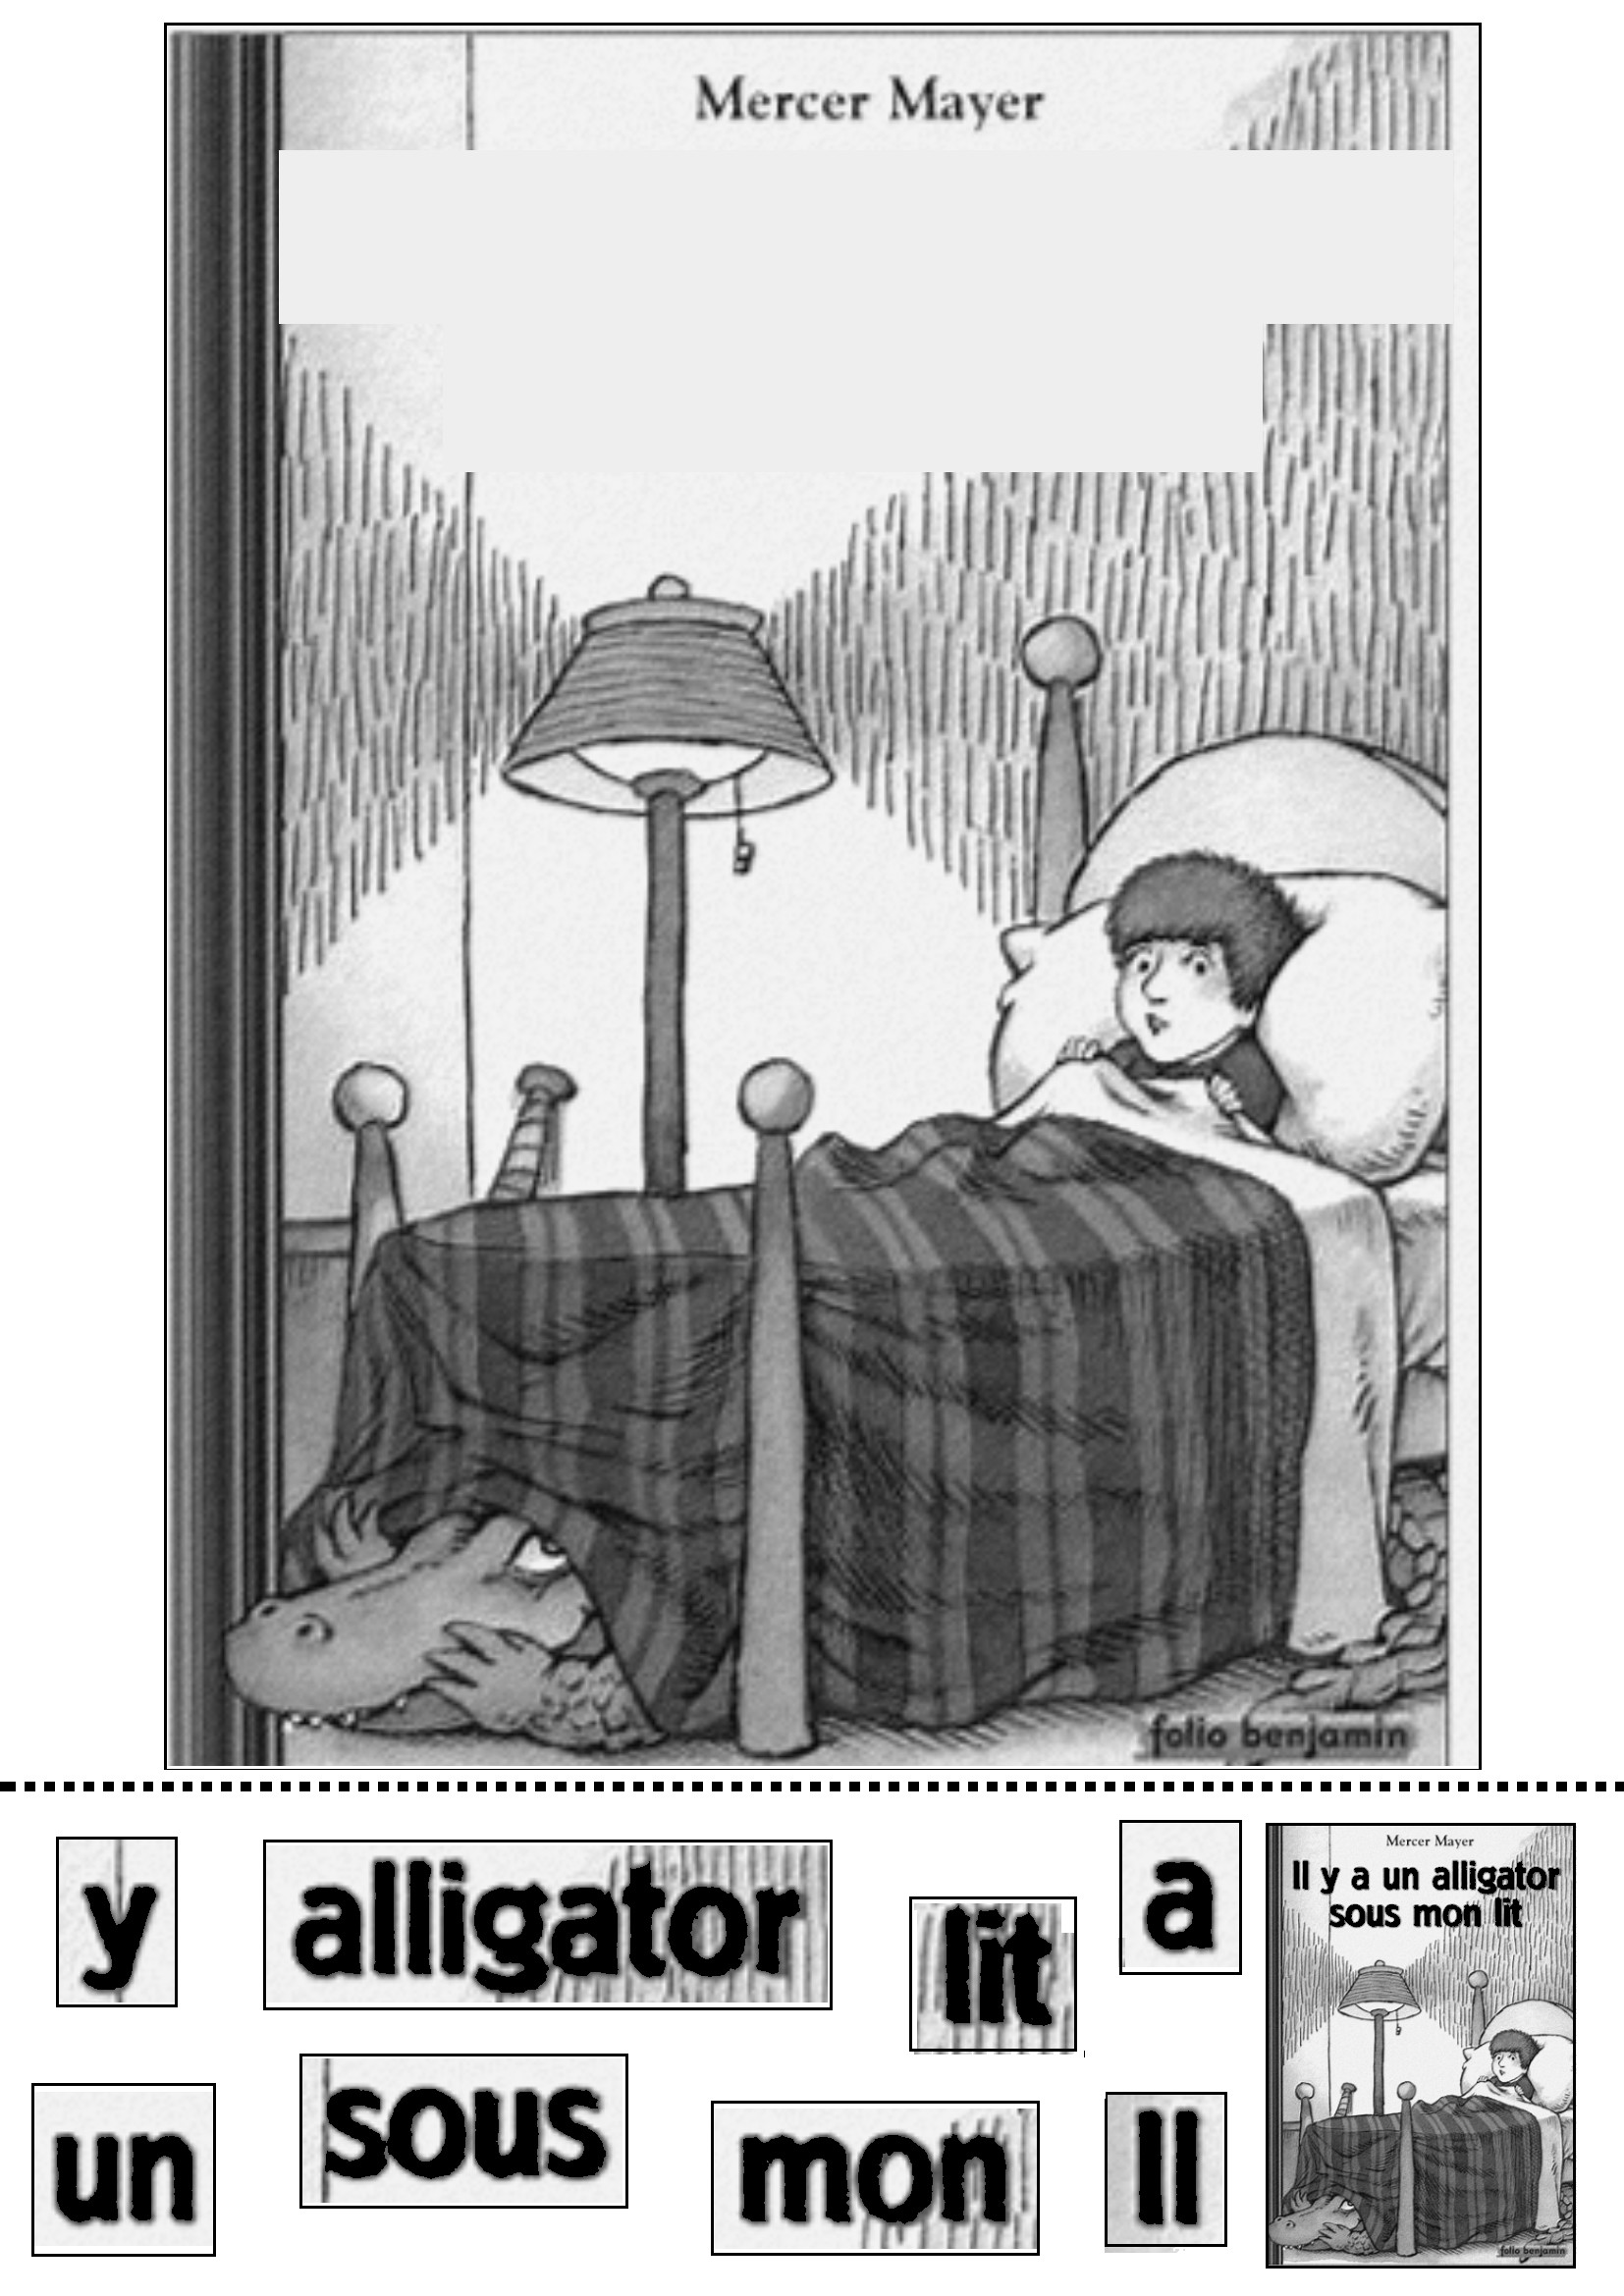 Reconstituer le titre de l album il y a un alligator sous mon lit